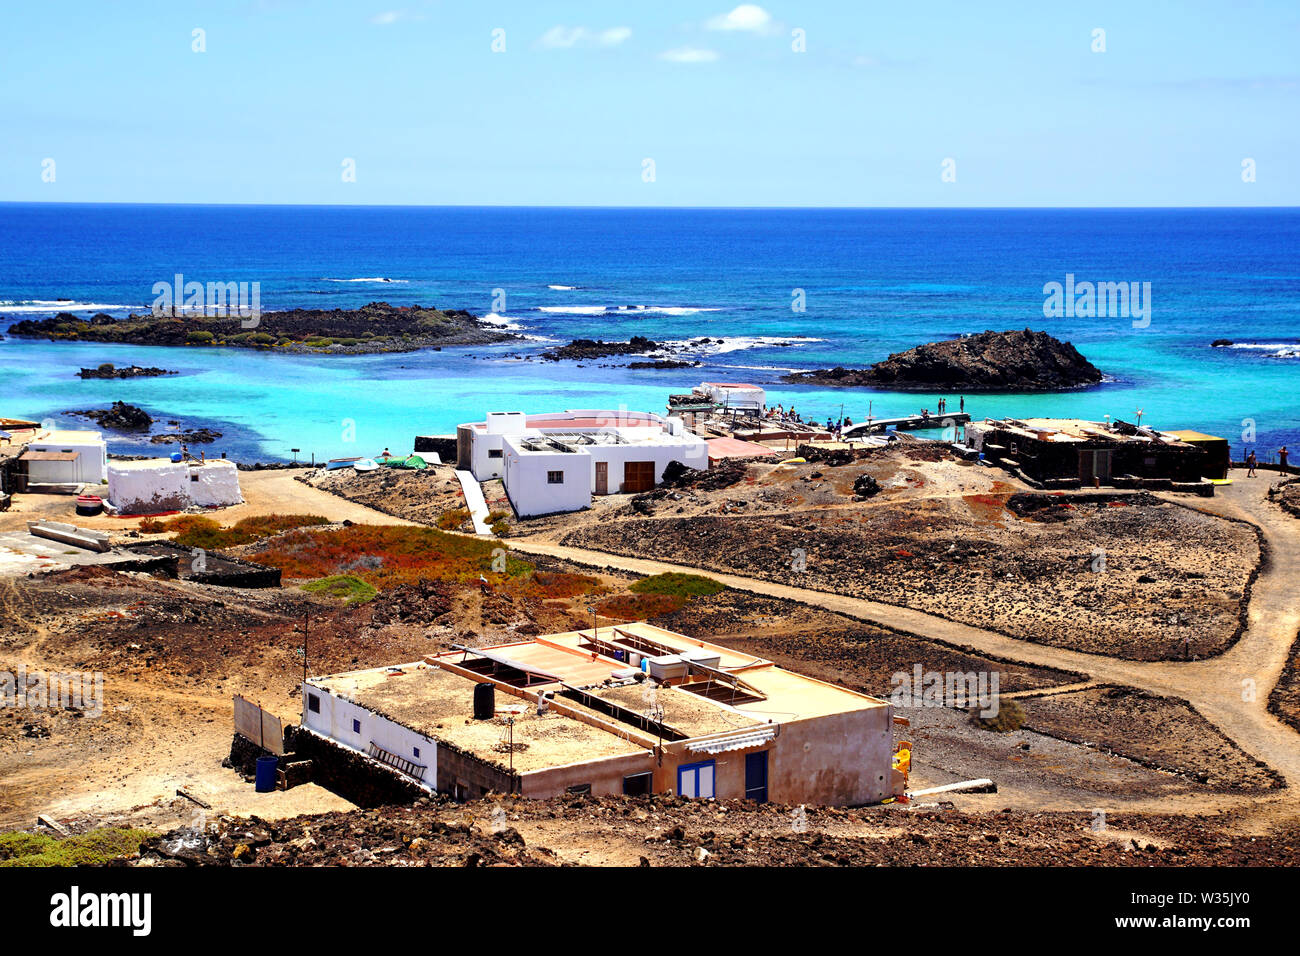 The fishing village of El Puertito on Isla de Lobos in Fuerteventura, Spain Stock Photo